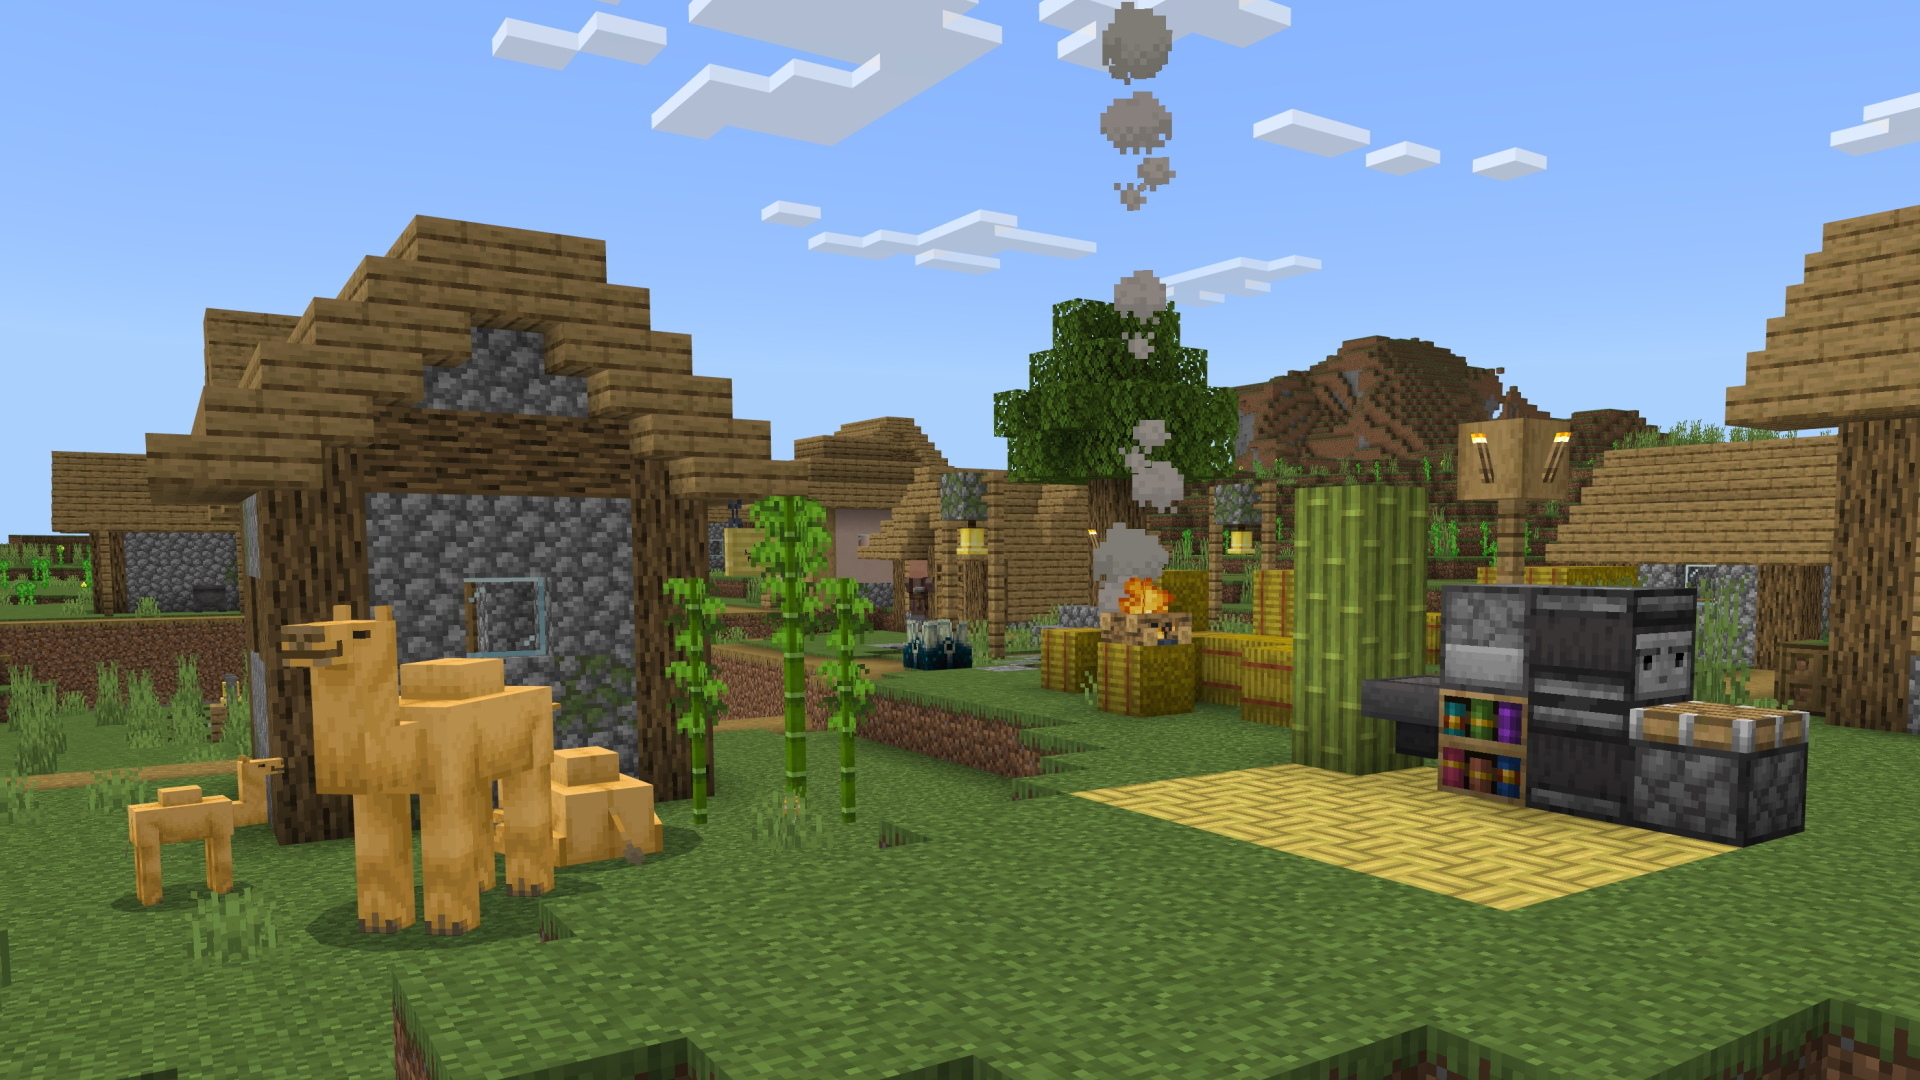 Minecraft Preview 1.19.60.23, ambientado em uma vila com camelos, estantes esculpidas, bambu e muito mais.